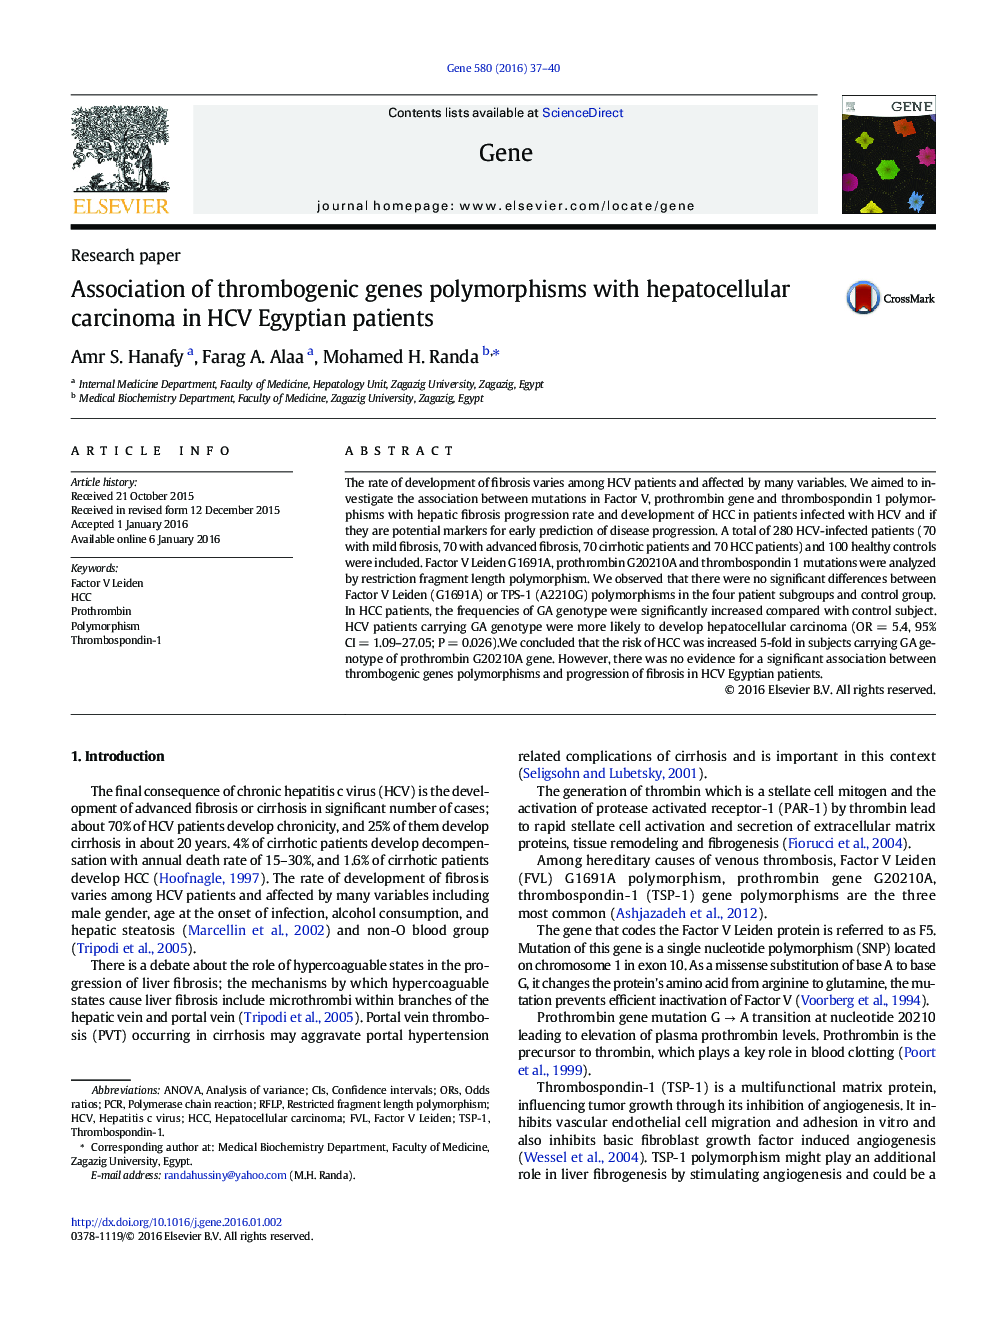 ارتباط پلی مورفیسم ژن های ترومبوزیک با کارسینوم هپاتوسلولار در بیماران HCV مصری